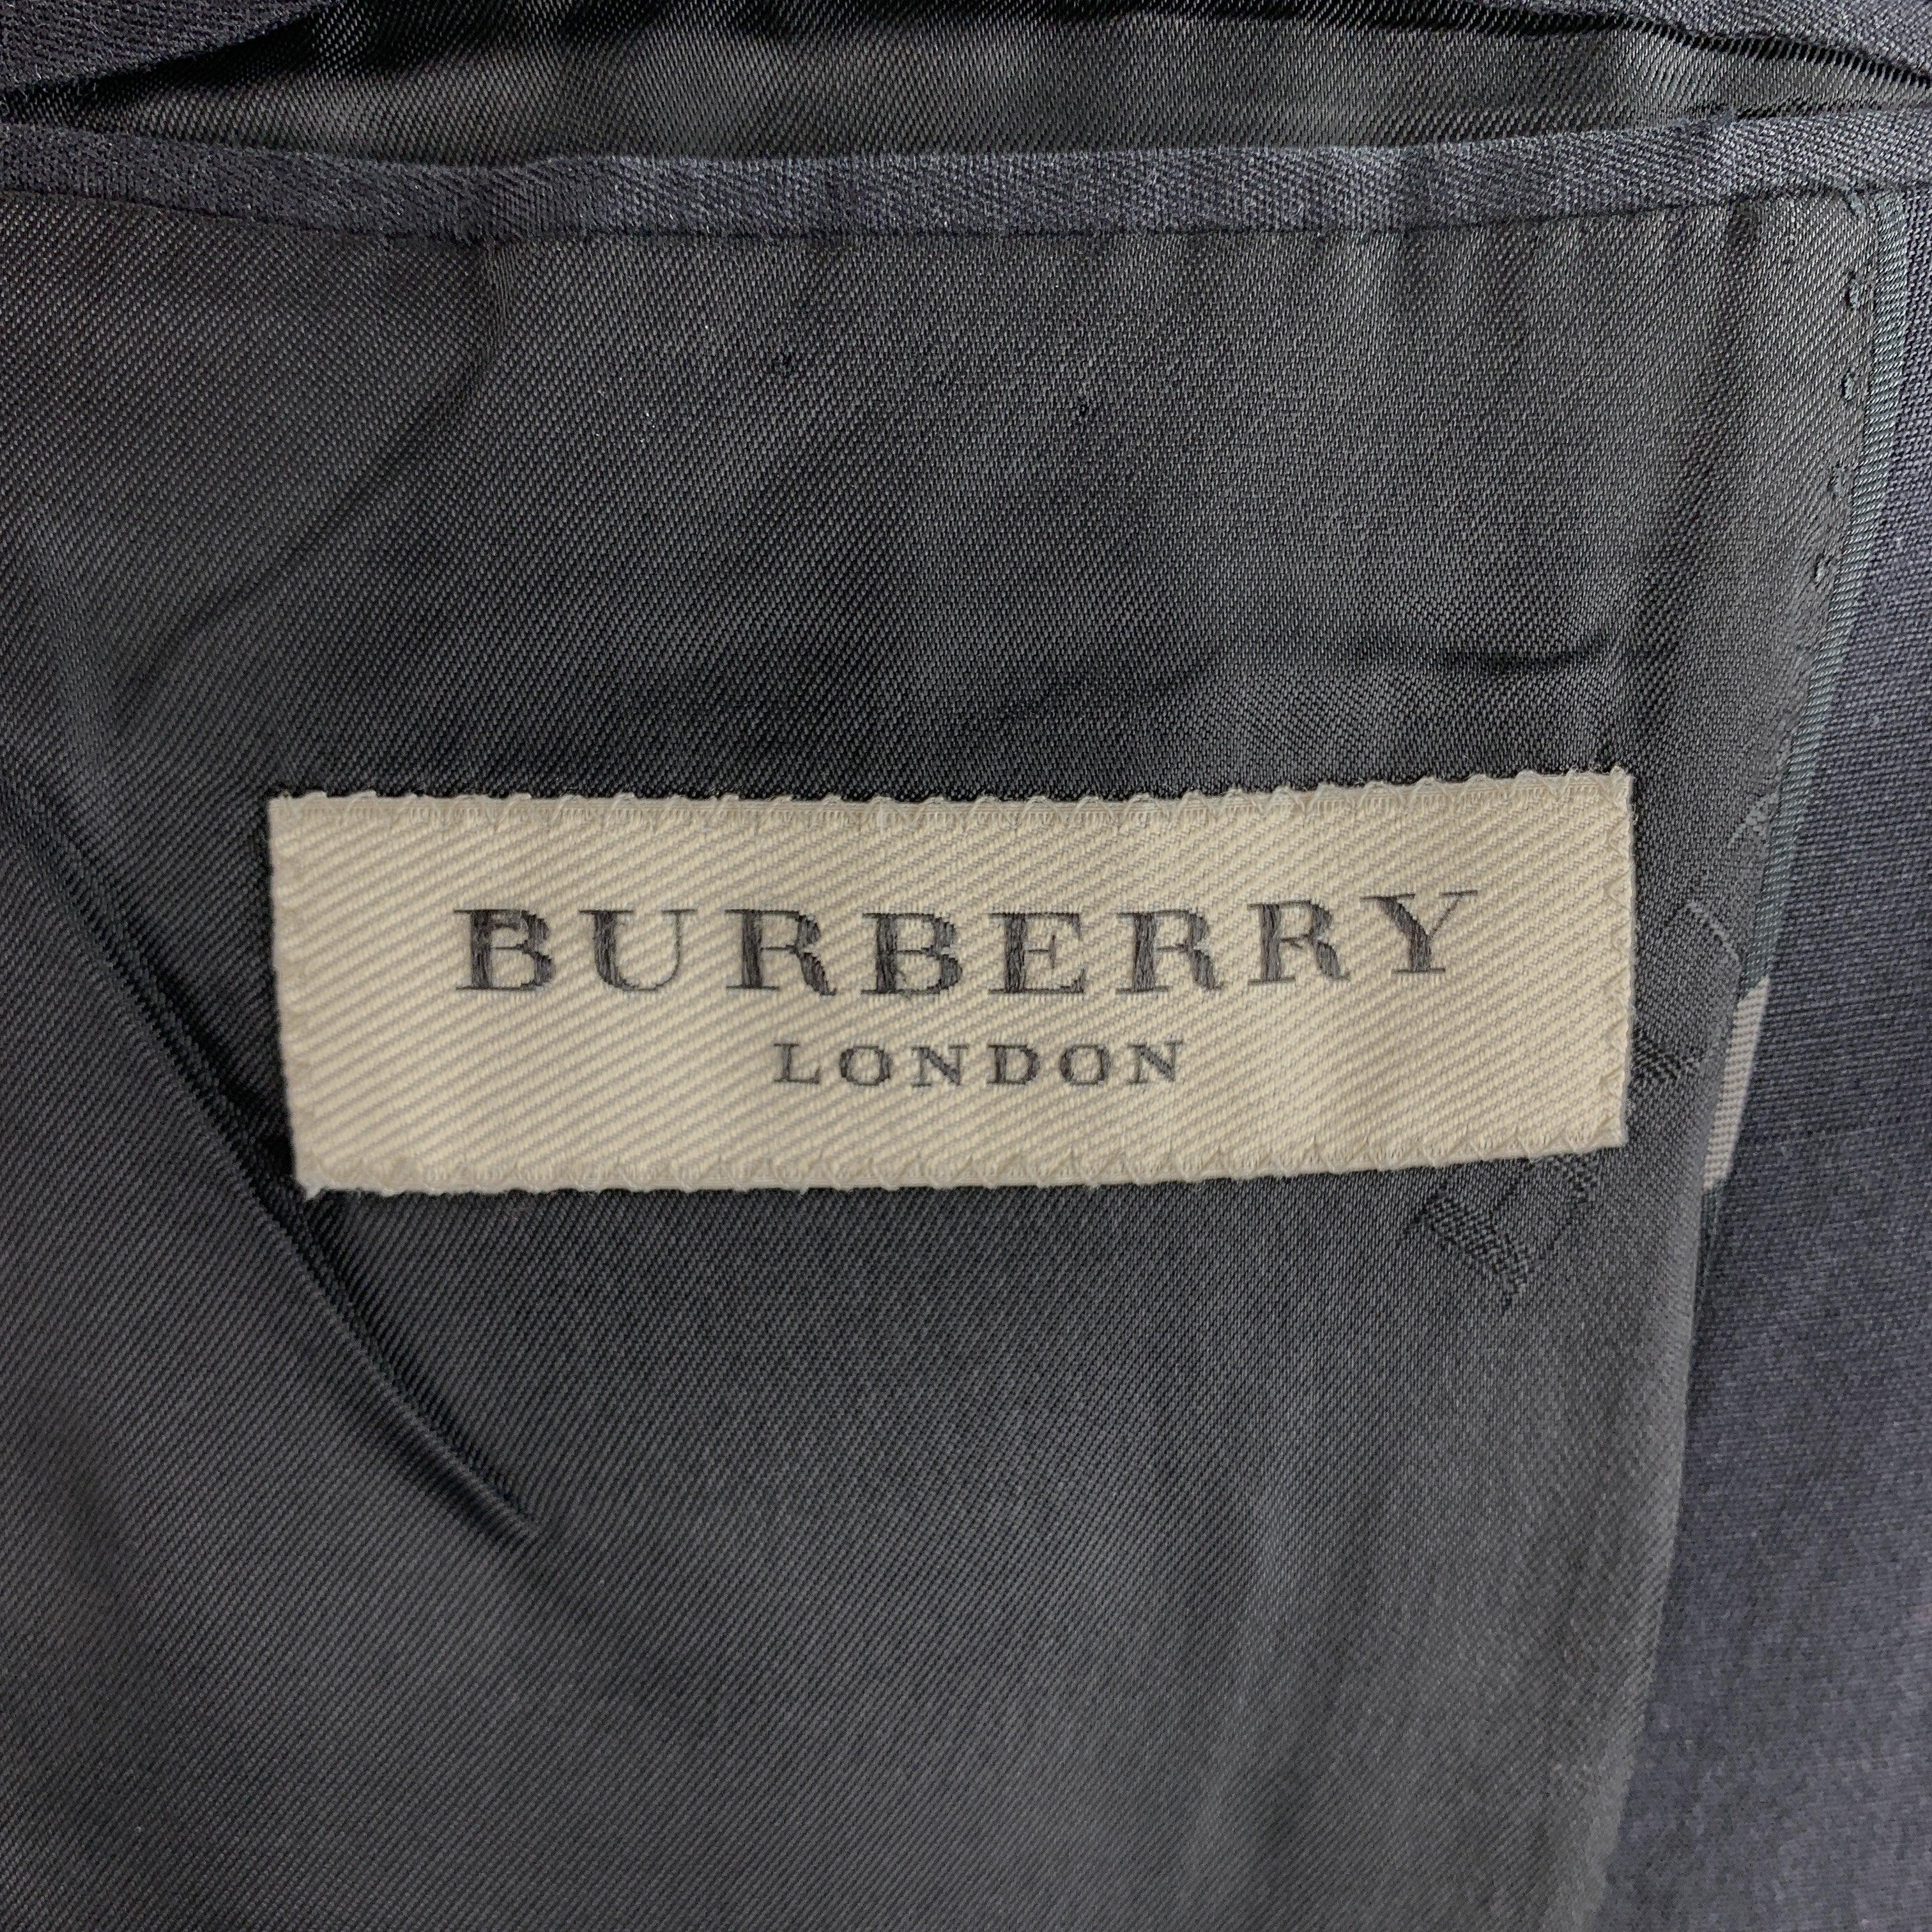 BURBERRY LONDON Size 44 Black Plaid Cotton Blend Notch Lapel Sport Coat For Sale 2